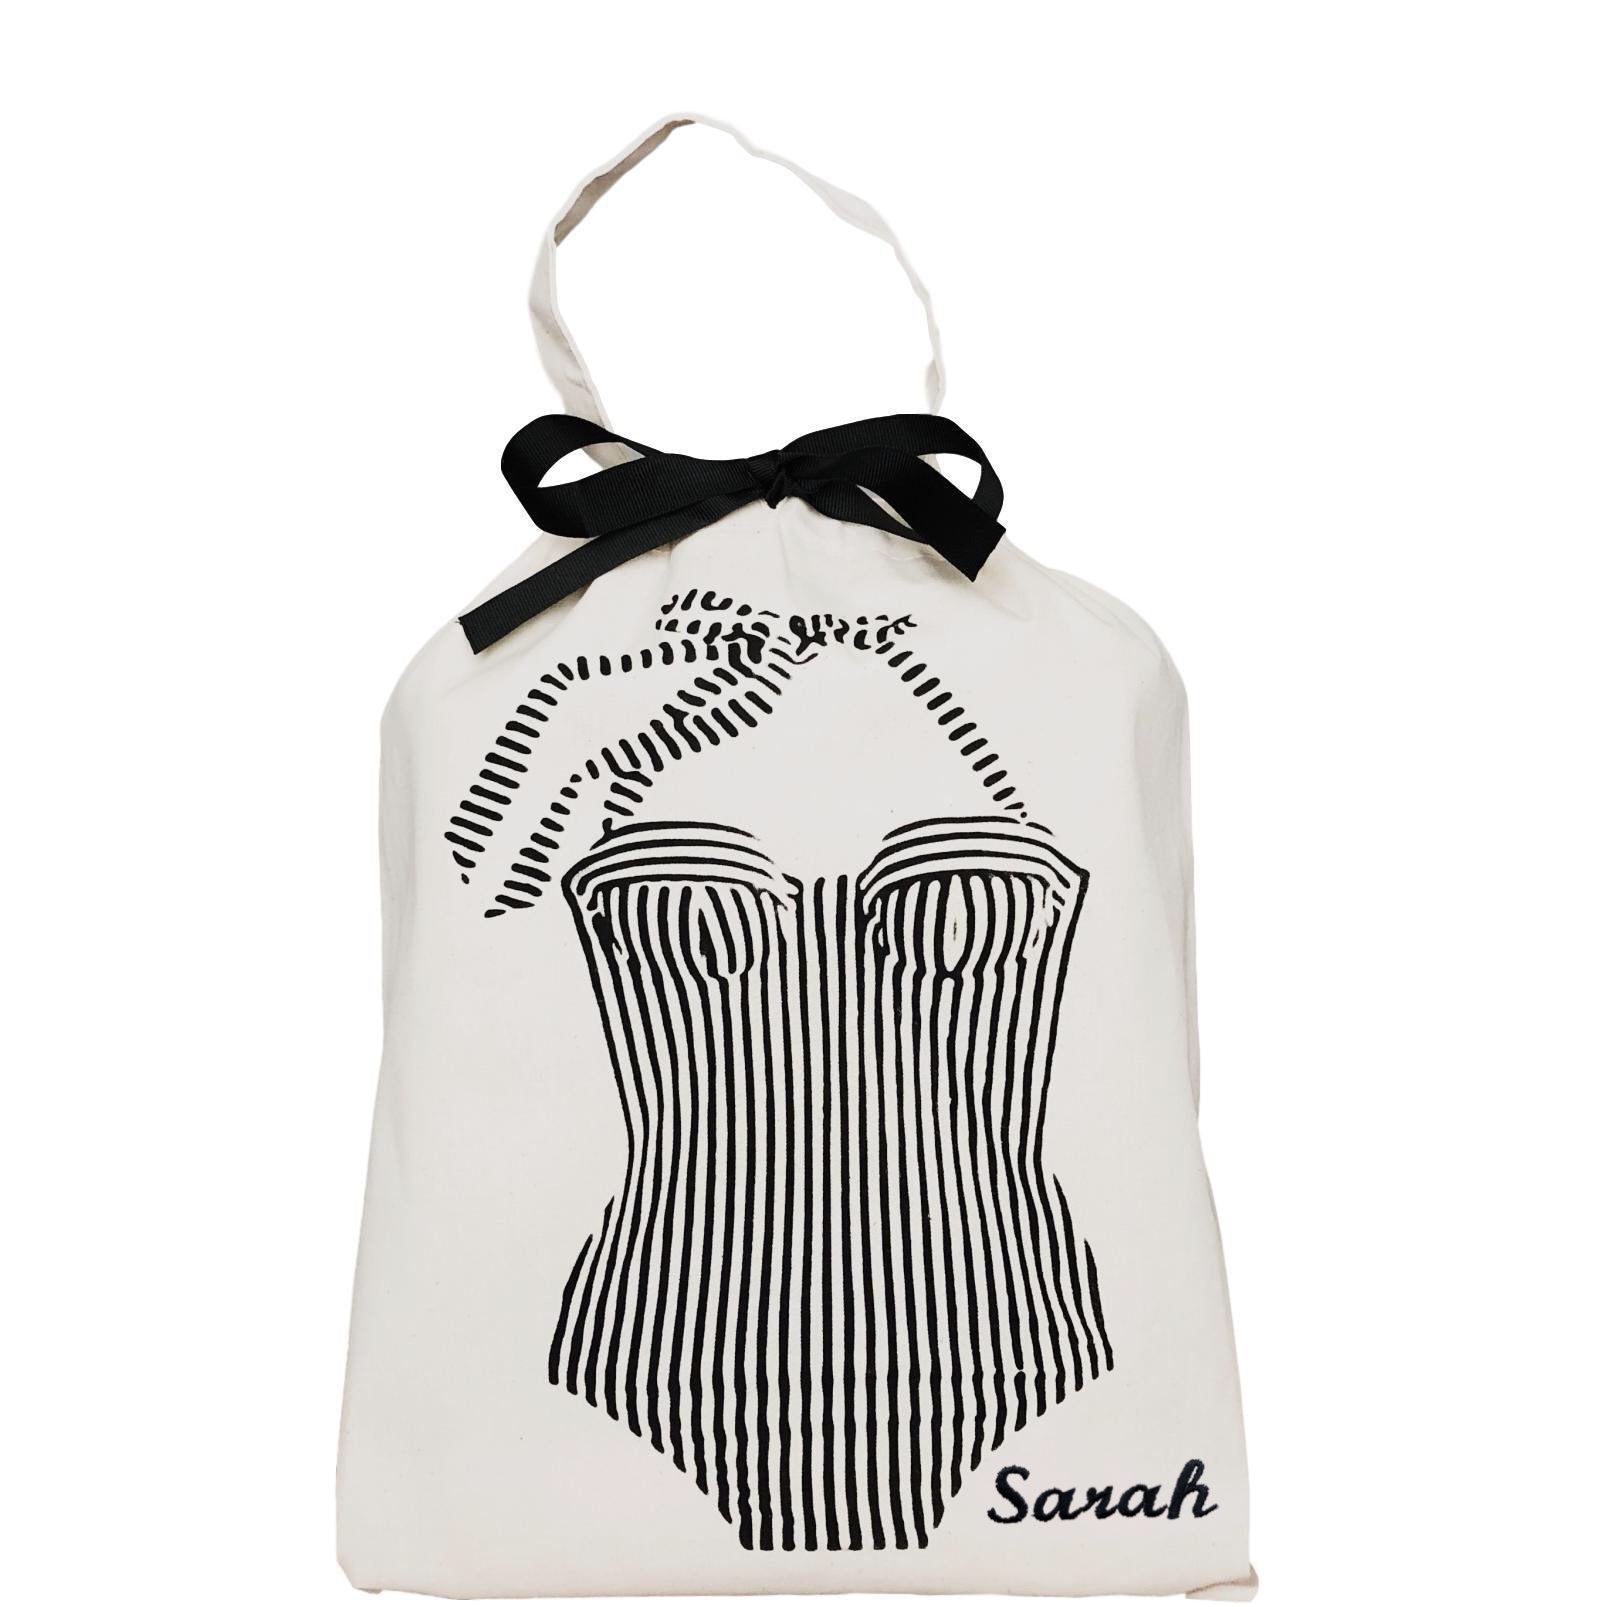 Sac de maillot de bain Bretagne avec monogramme "sarah" sur le côté droit.